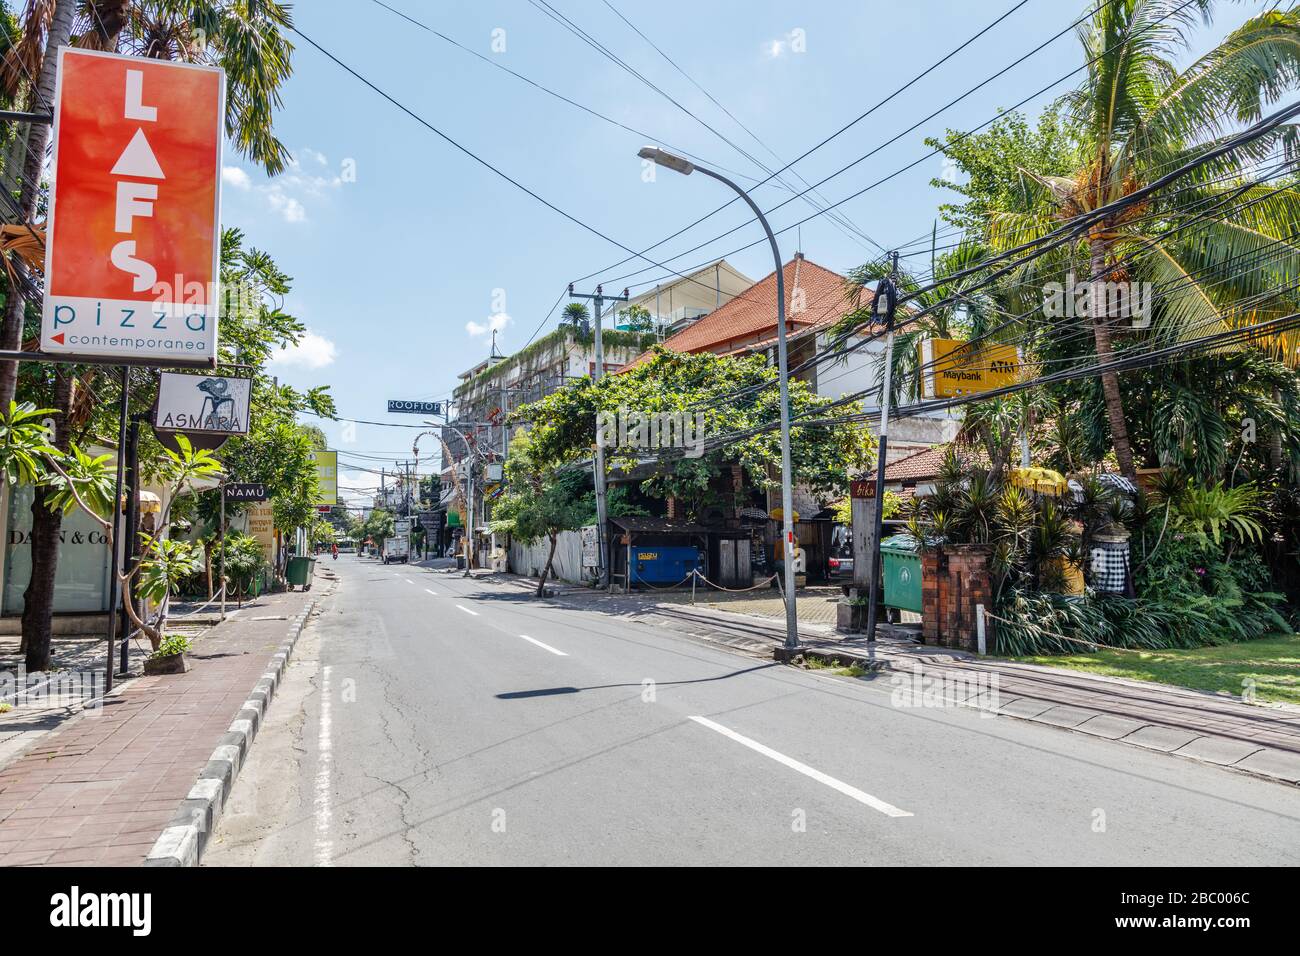 Avril 01, 2020. Rues vides de Bali. Quarantaine pour COVID-19. Petitenget, l'un des quartiers touristiques les plus populaires de Bali. Indonésie. Banque D'Images